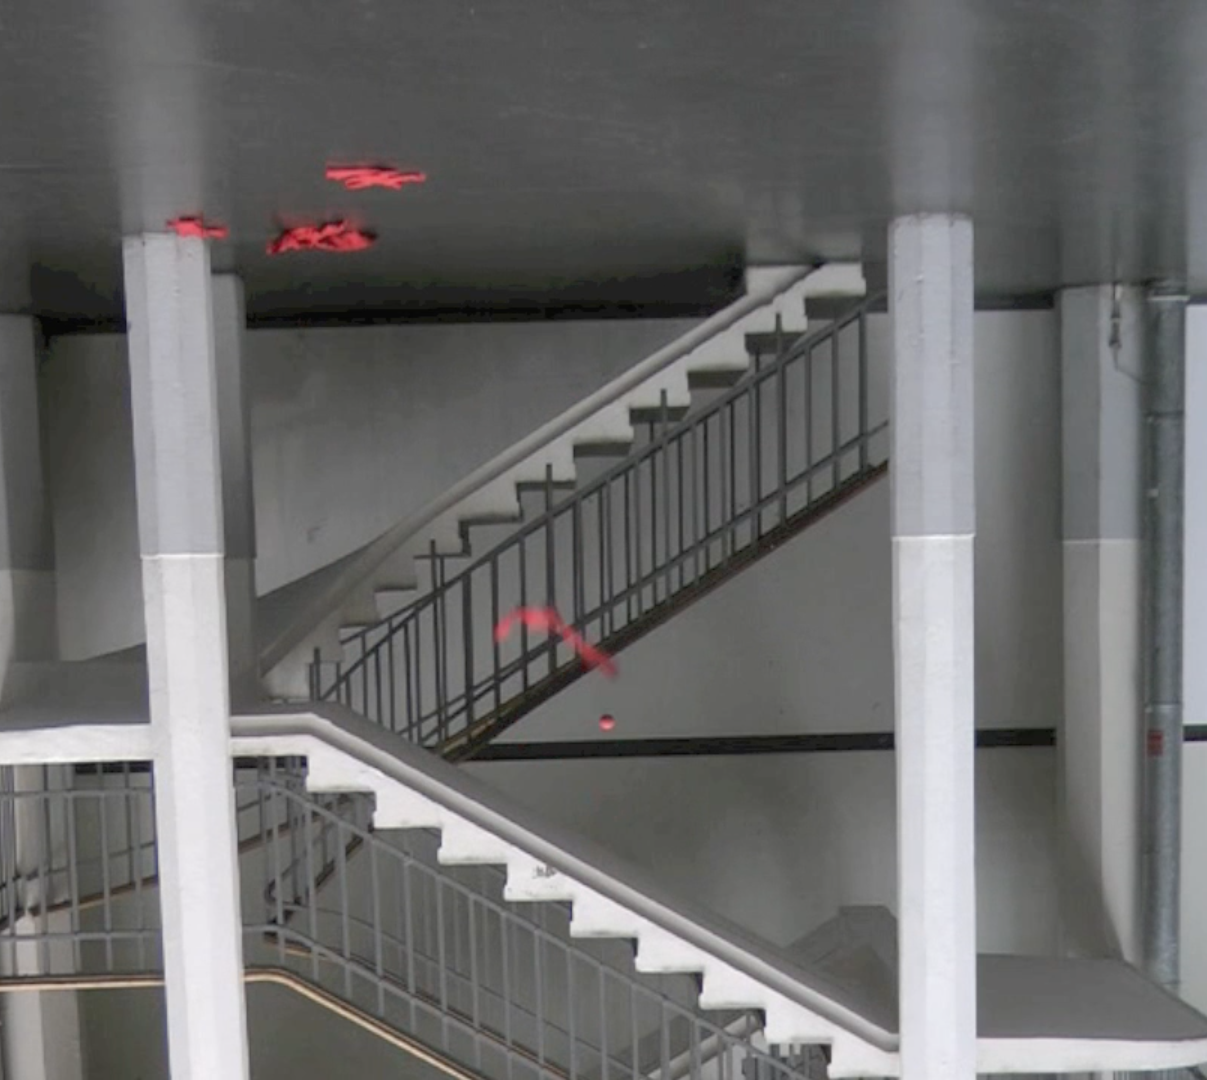 Ein Treppenhaus ist verkehrt herum zu sehen, ein roter Stoffstreifen und ein Ball scheinen nach oben zu fallen.